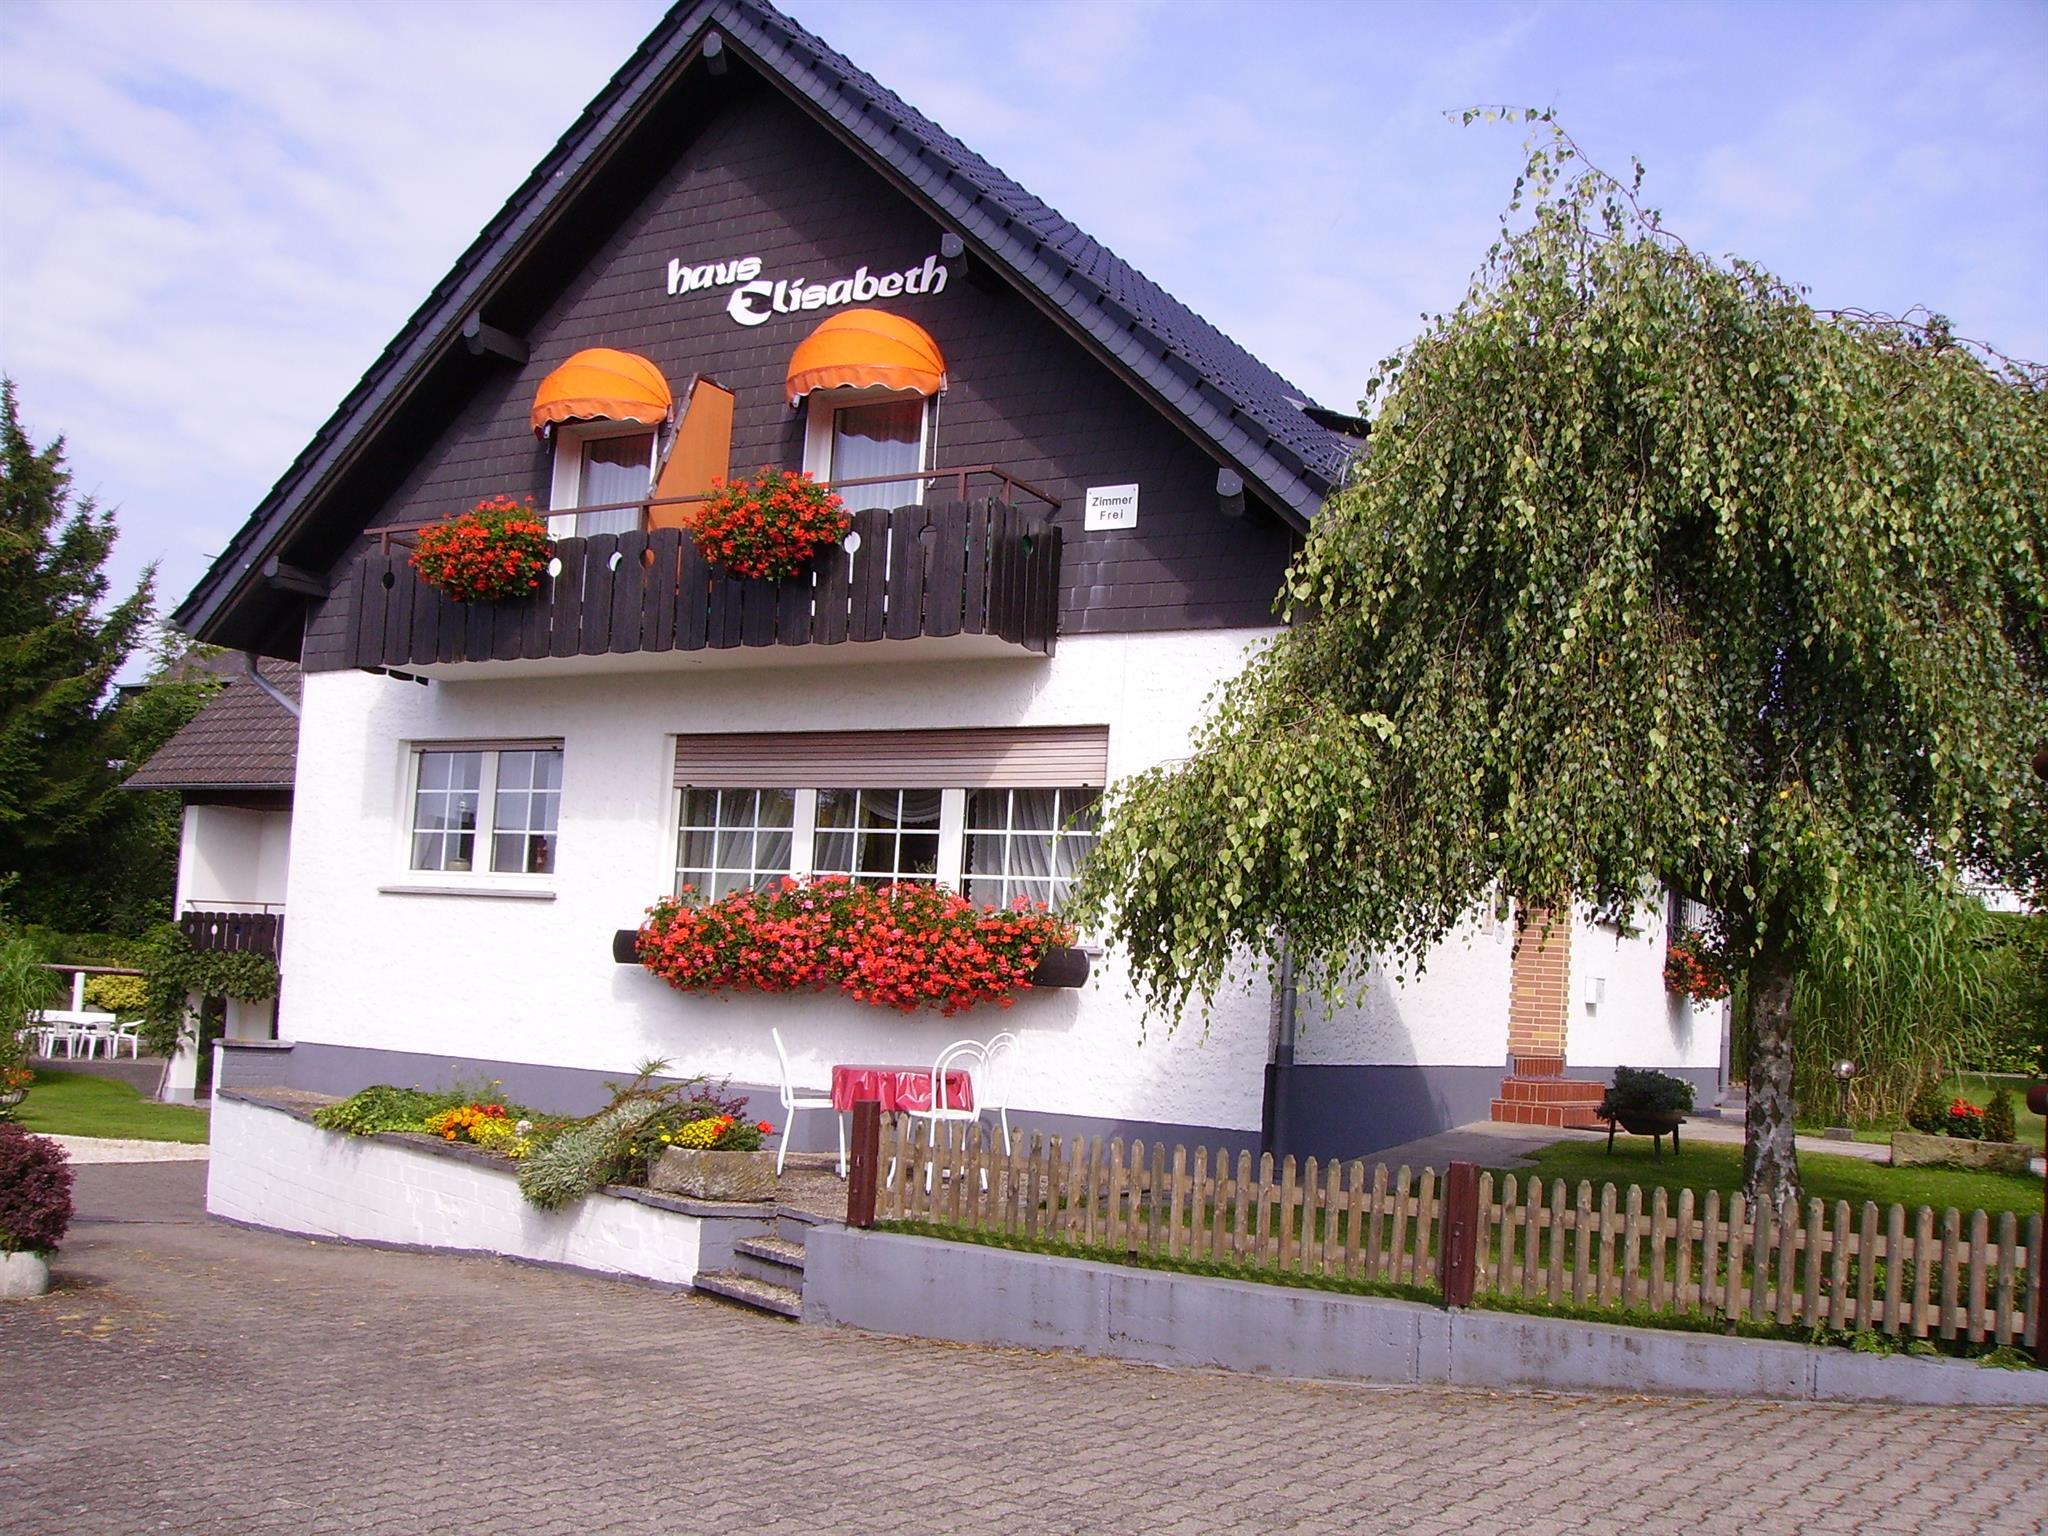 Haus Elisabeth 2-Appartement - No. I - Ferienwohnung in Deutschland